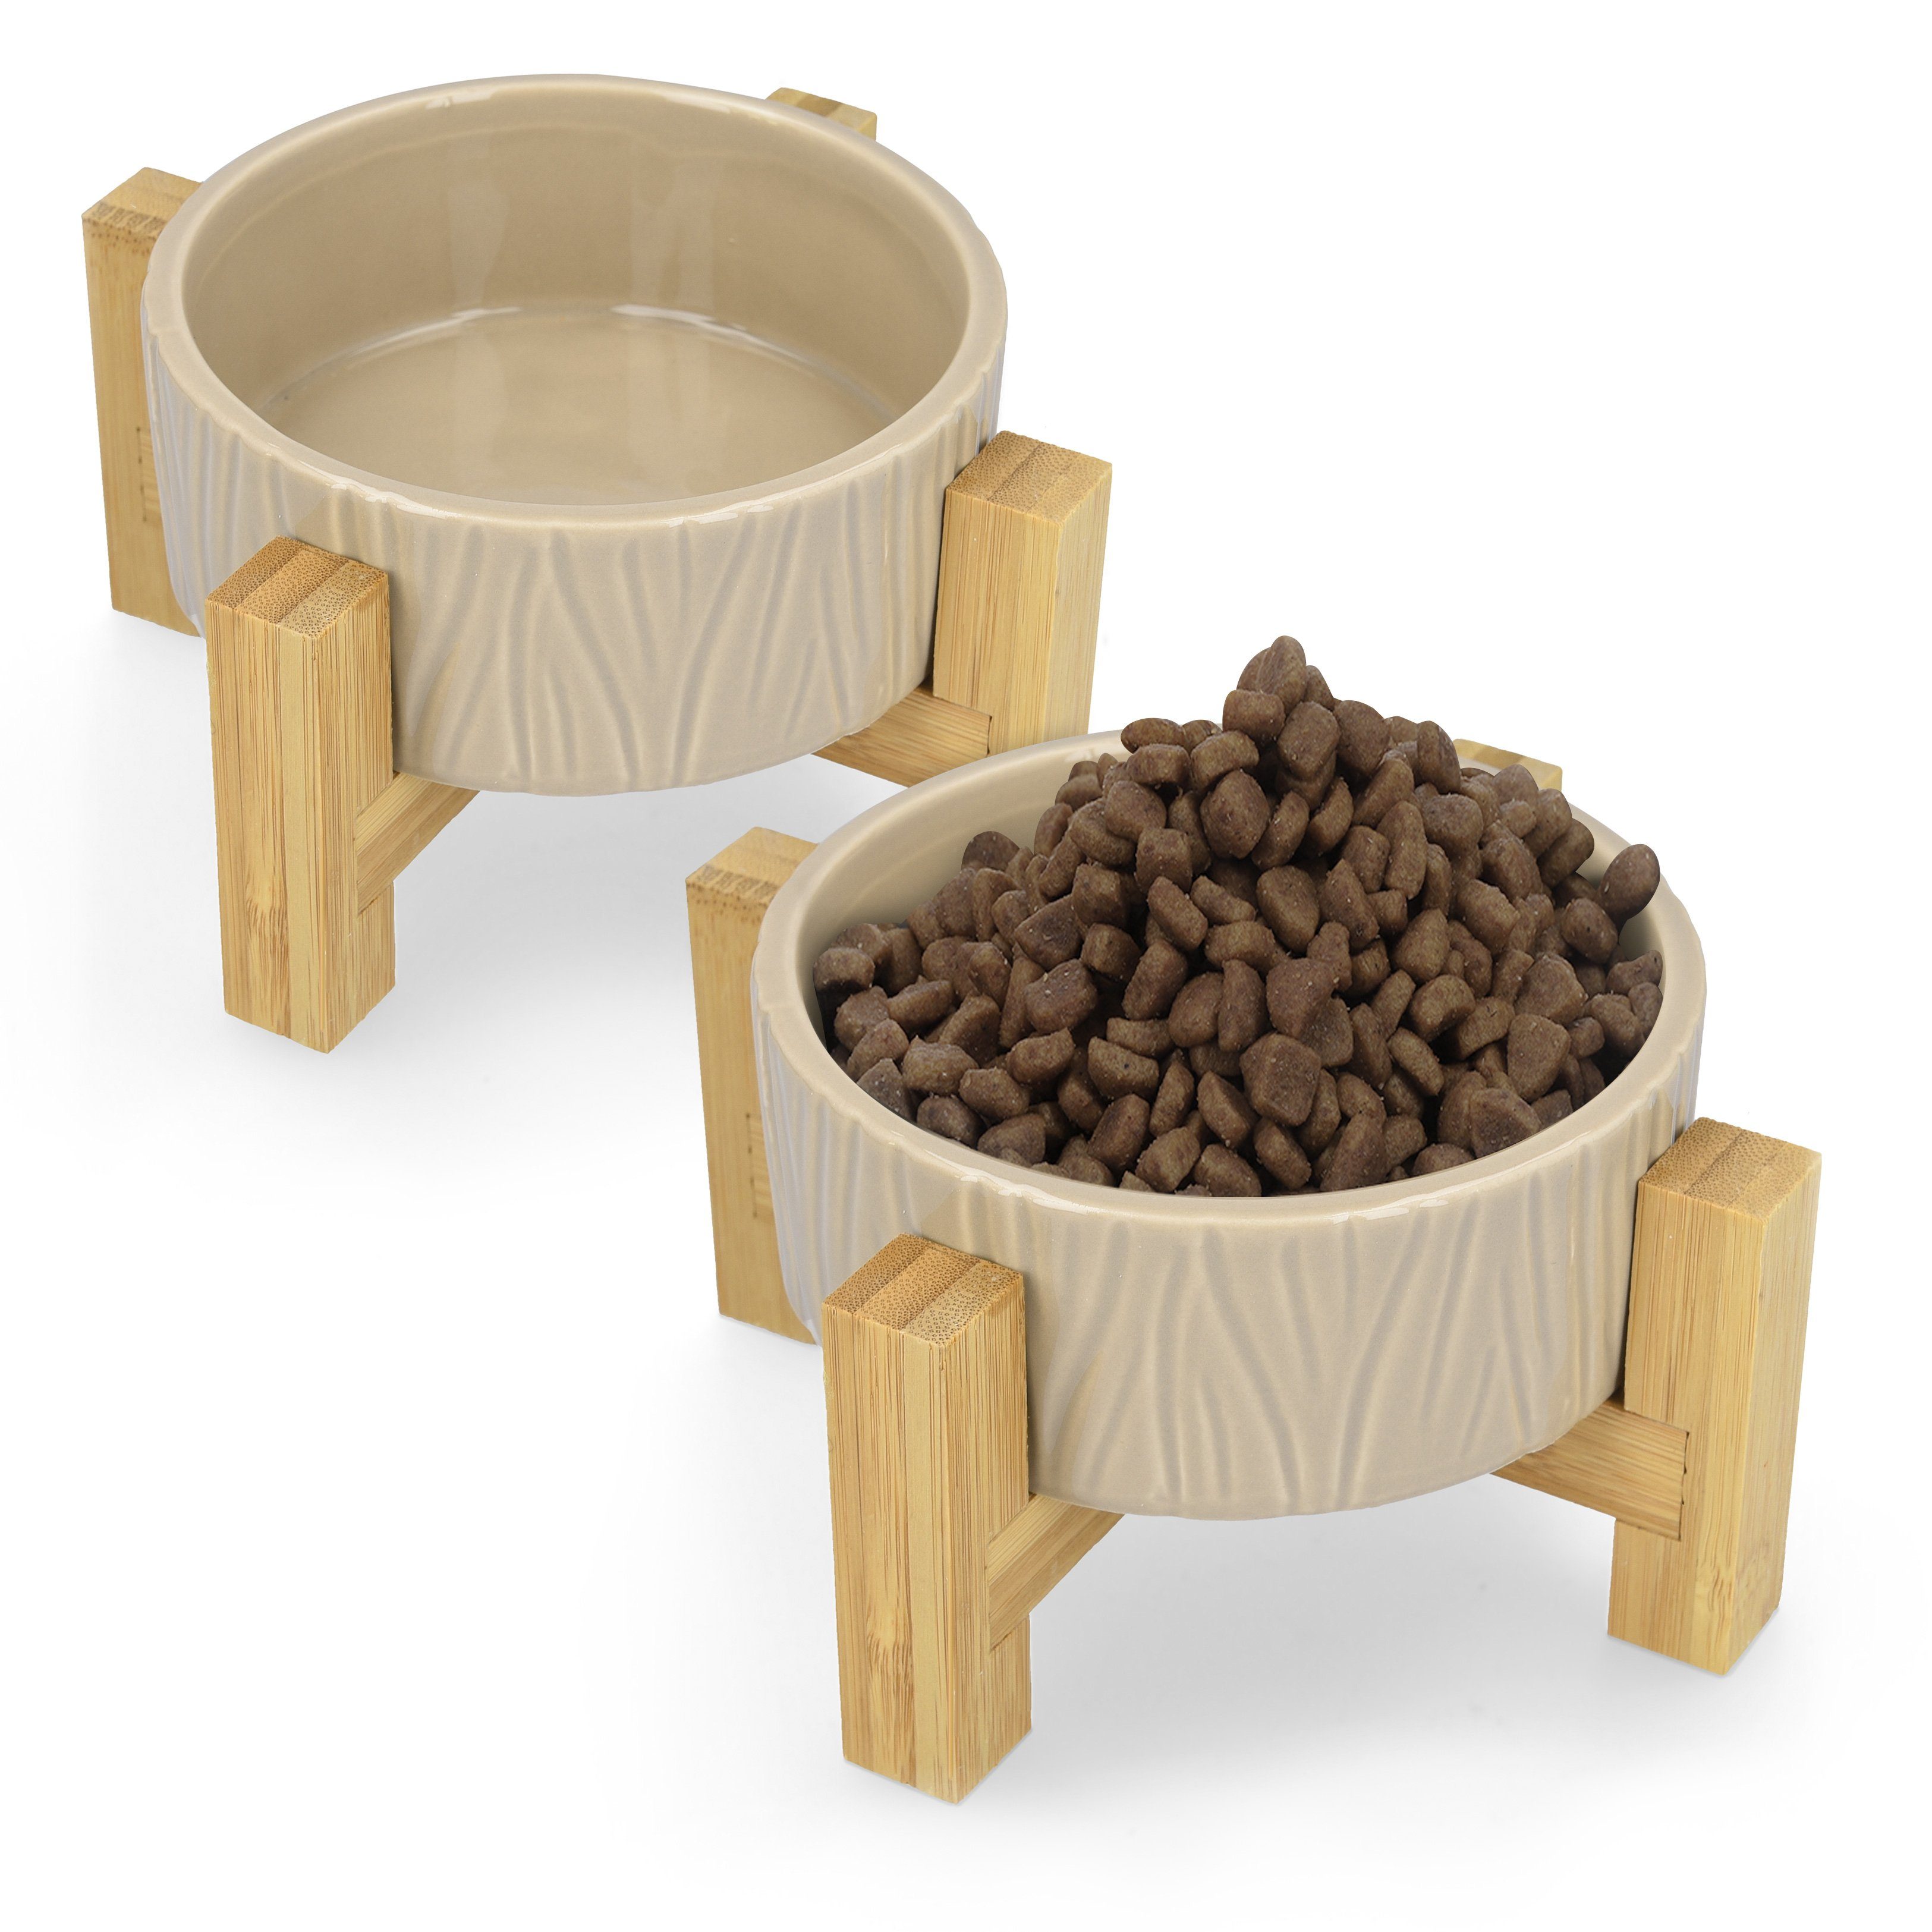 Katzennapf 3er Set höhenverstellbar kleine Hunde Futterbar mit Holz Ständer für Katzen Erhöht Futterstation Futternapf mit 3 Edelstahl Näpfe